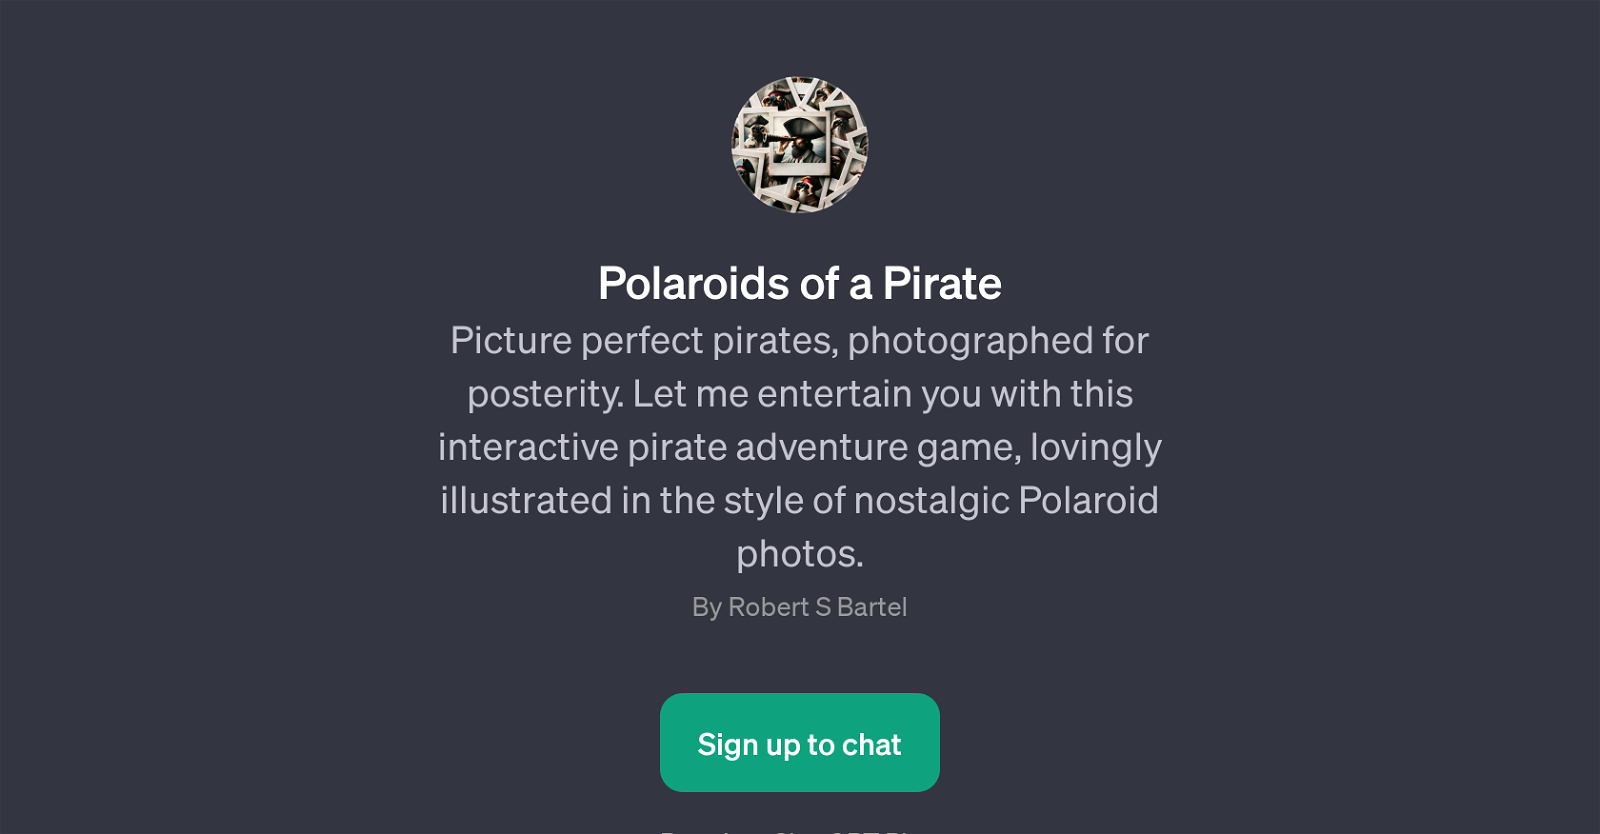 Polaroids of a Pirate website